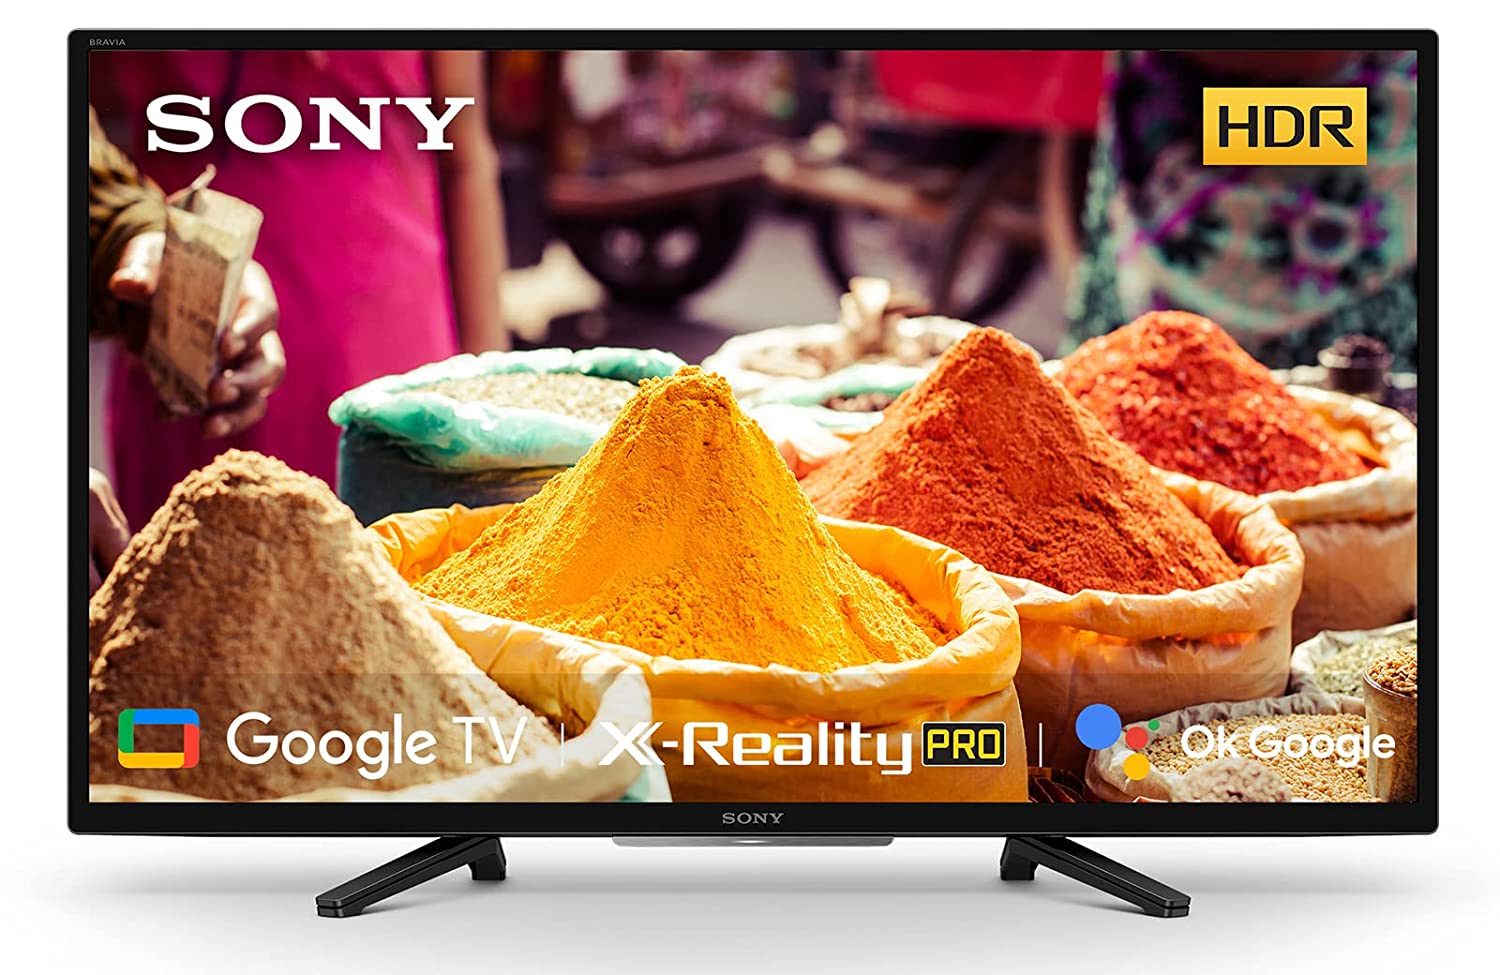 Sony Smart TV Deal: बंपर डिस्काउंट के साथ मिल रहे Sony के न्यू लॉन्च स्मार्ट टीवी, जानें क्या है प्राइस?